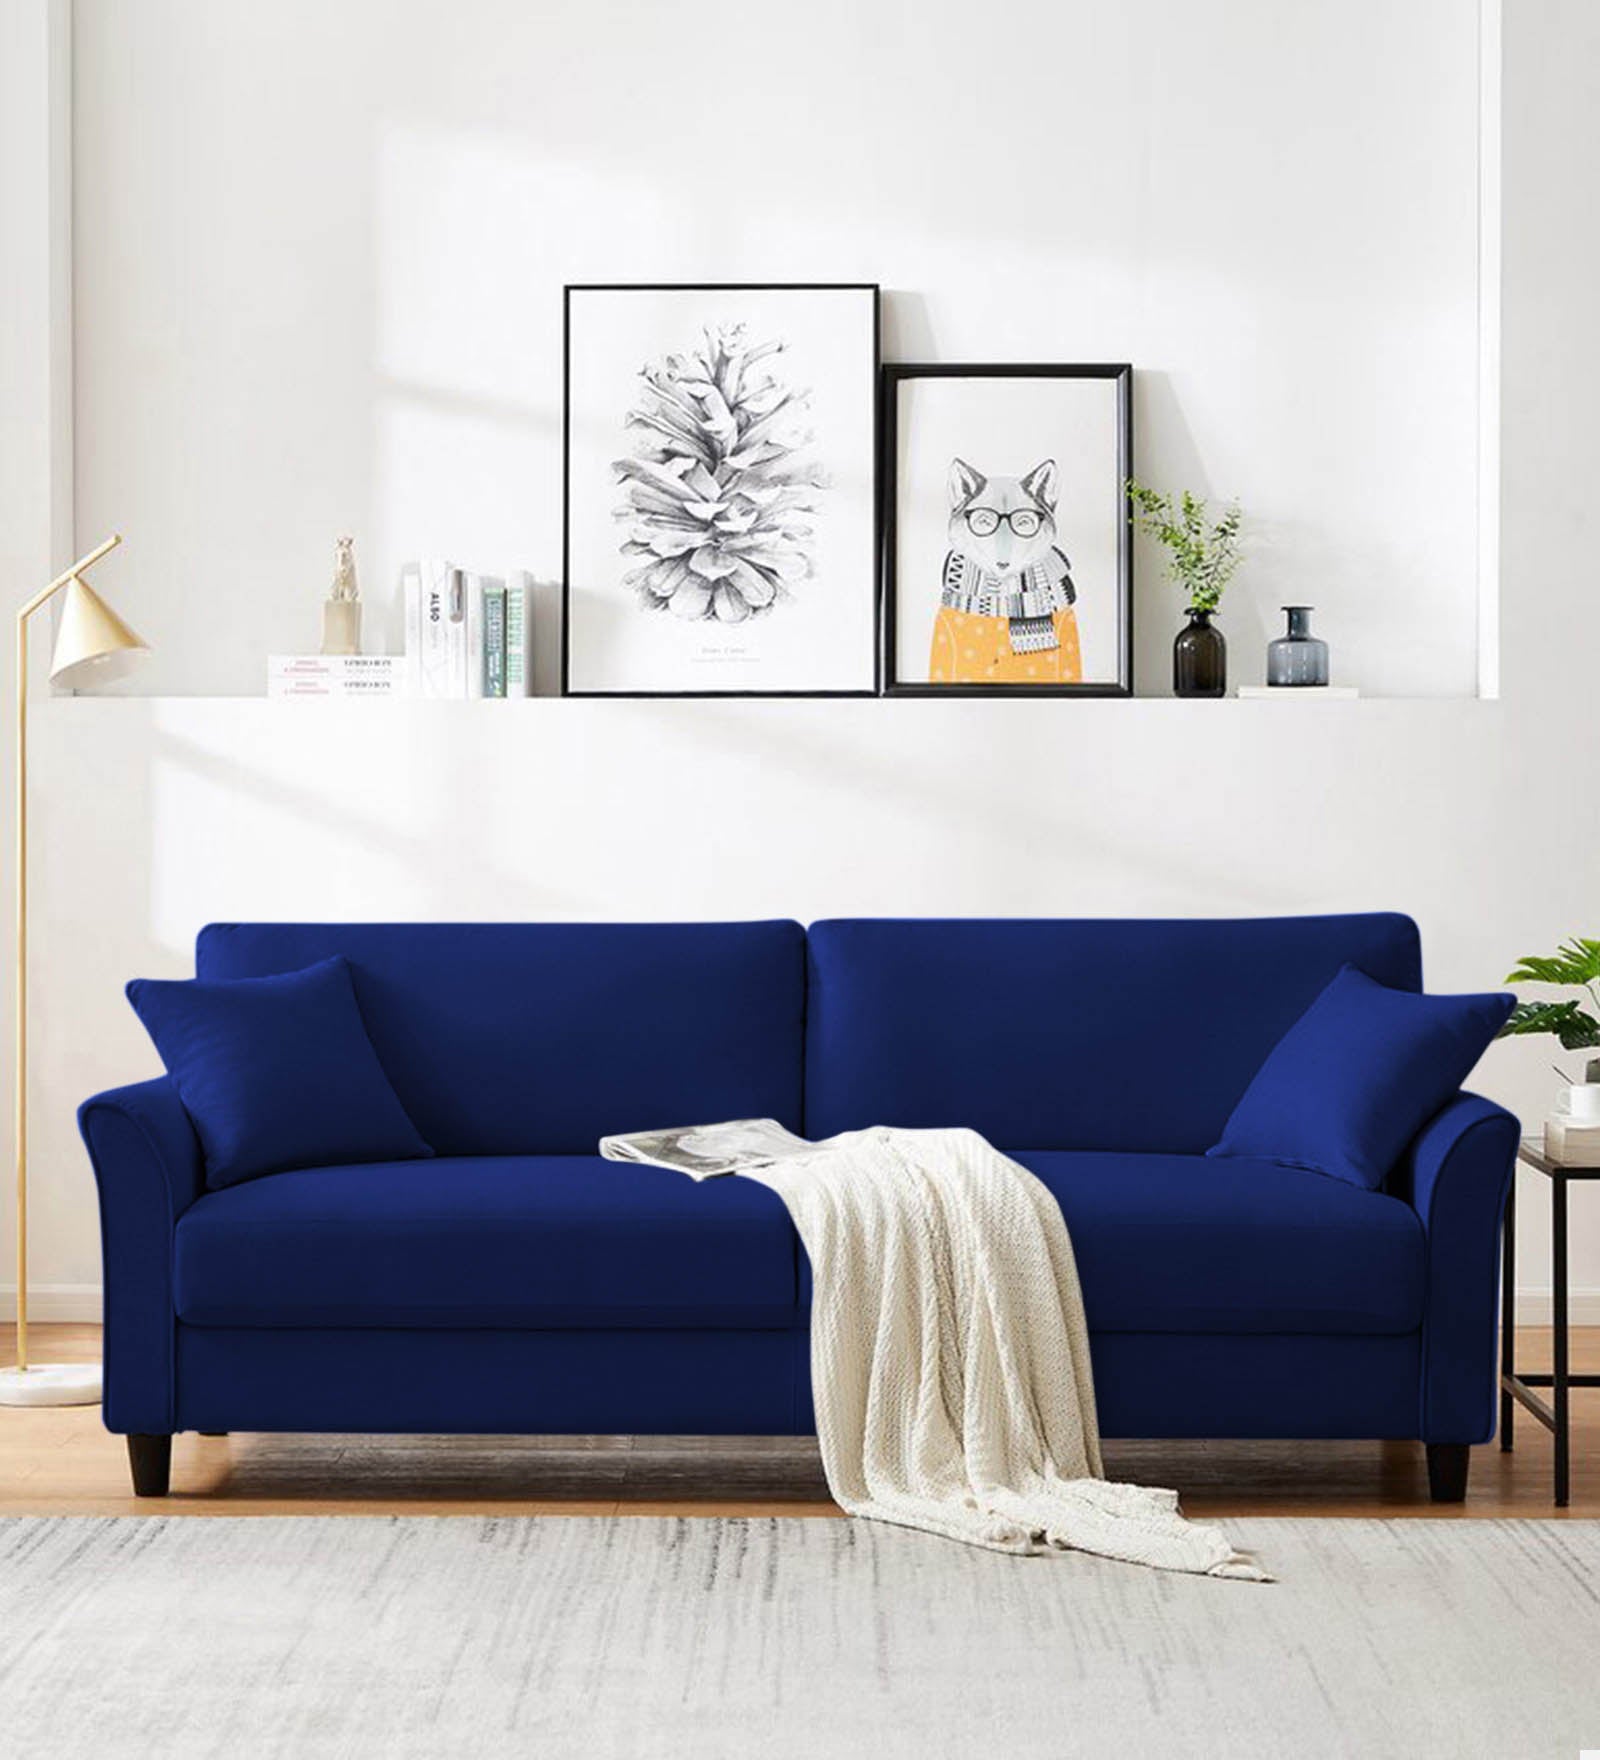 Daroo Velvet 3 Seater Sofa in Imperial blue Colour